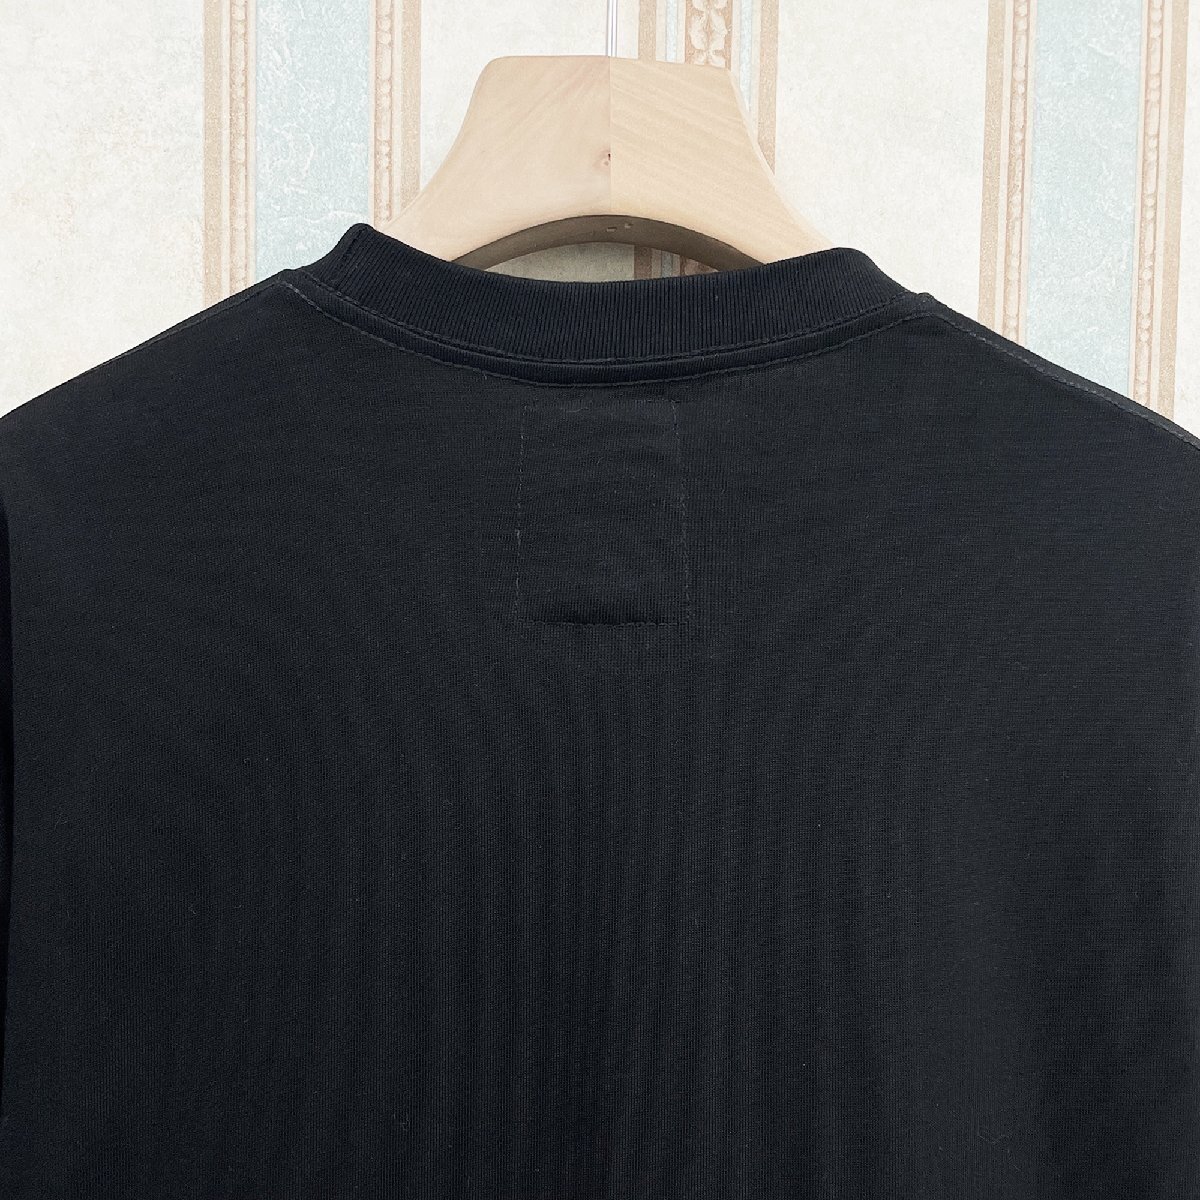 逸品 定価2万 FRANKLIN MUSK・アメリカ・ニューヨーク発 半袖Tシャツ 上質 個性 英字柄 アメカジ トップス 日常 ユニセックス サイズ4_画像7